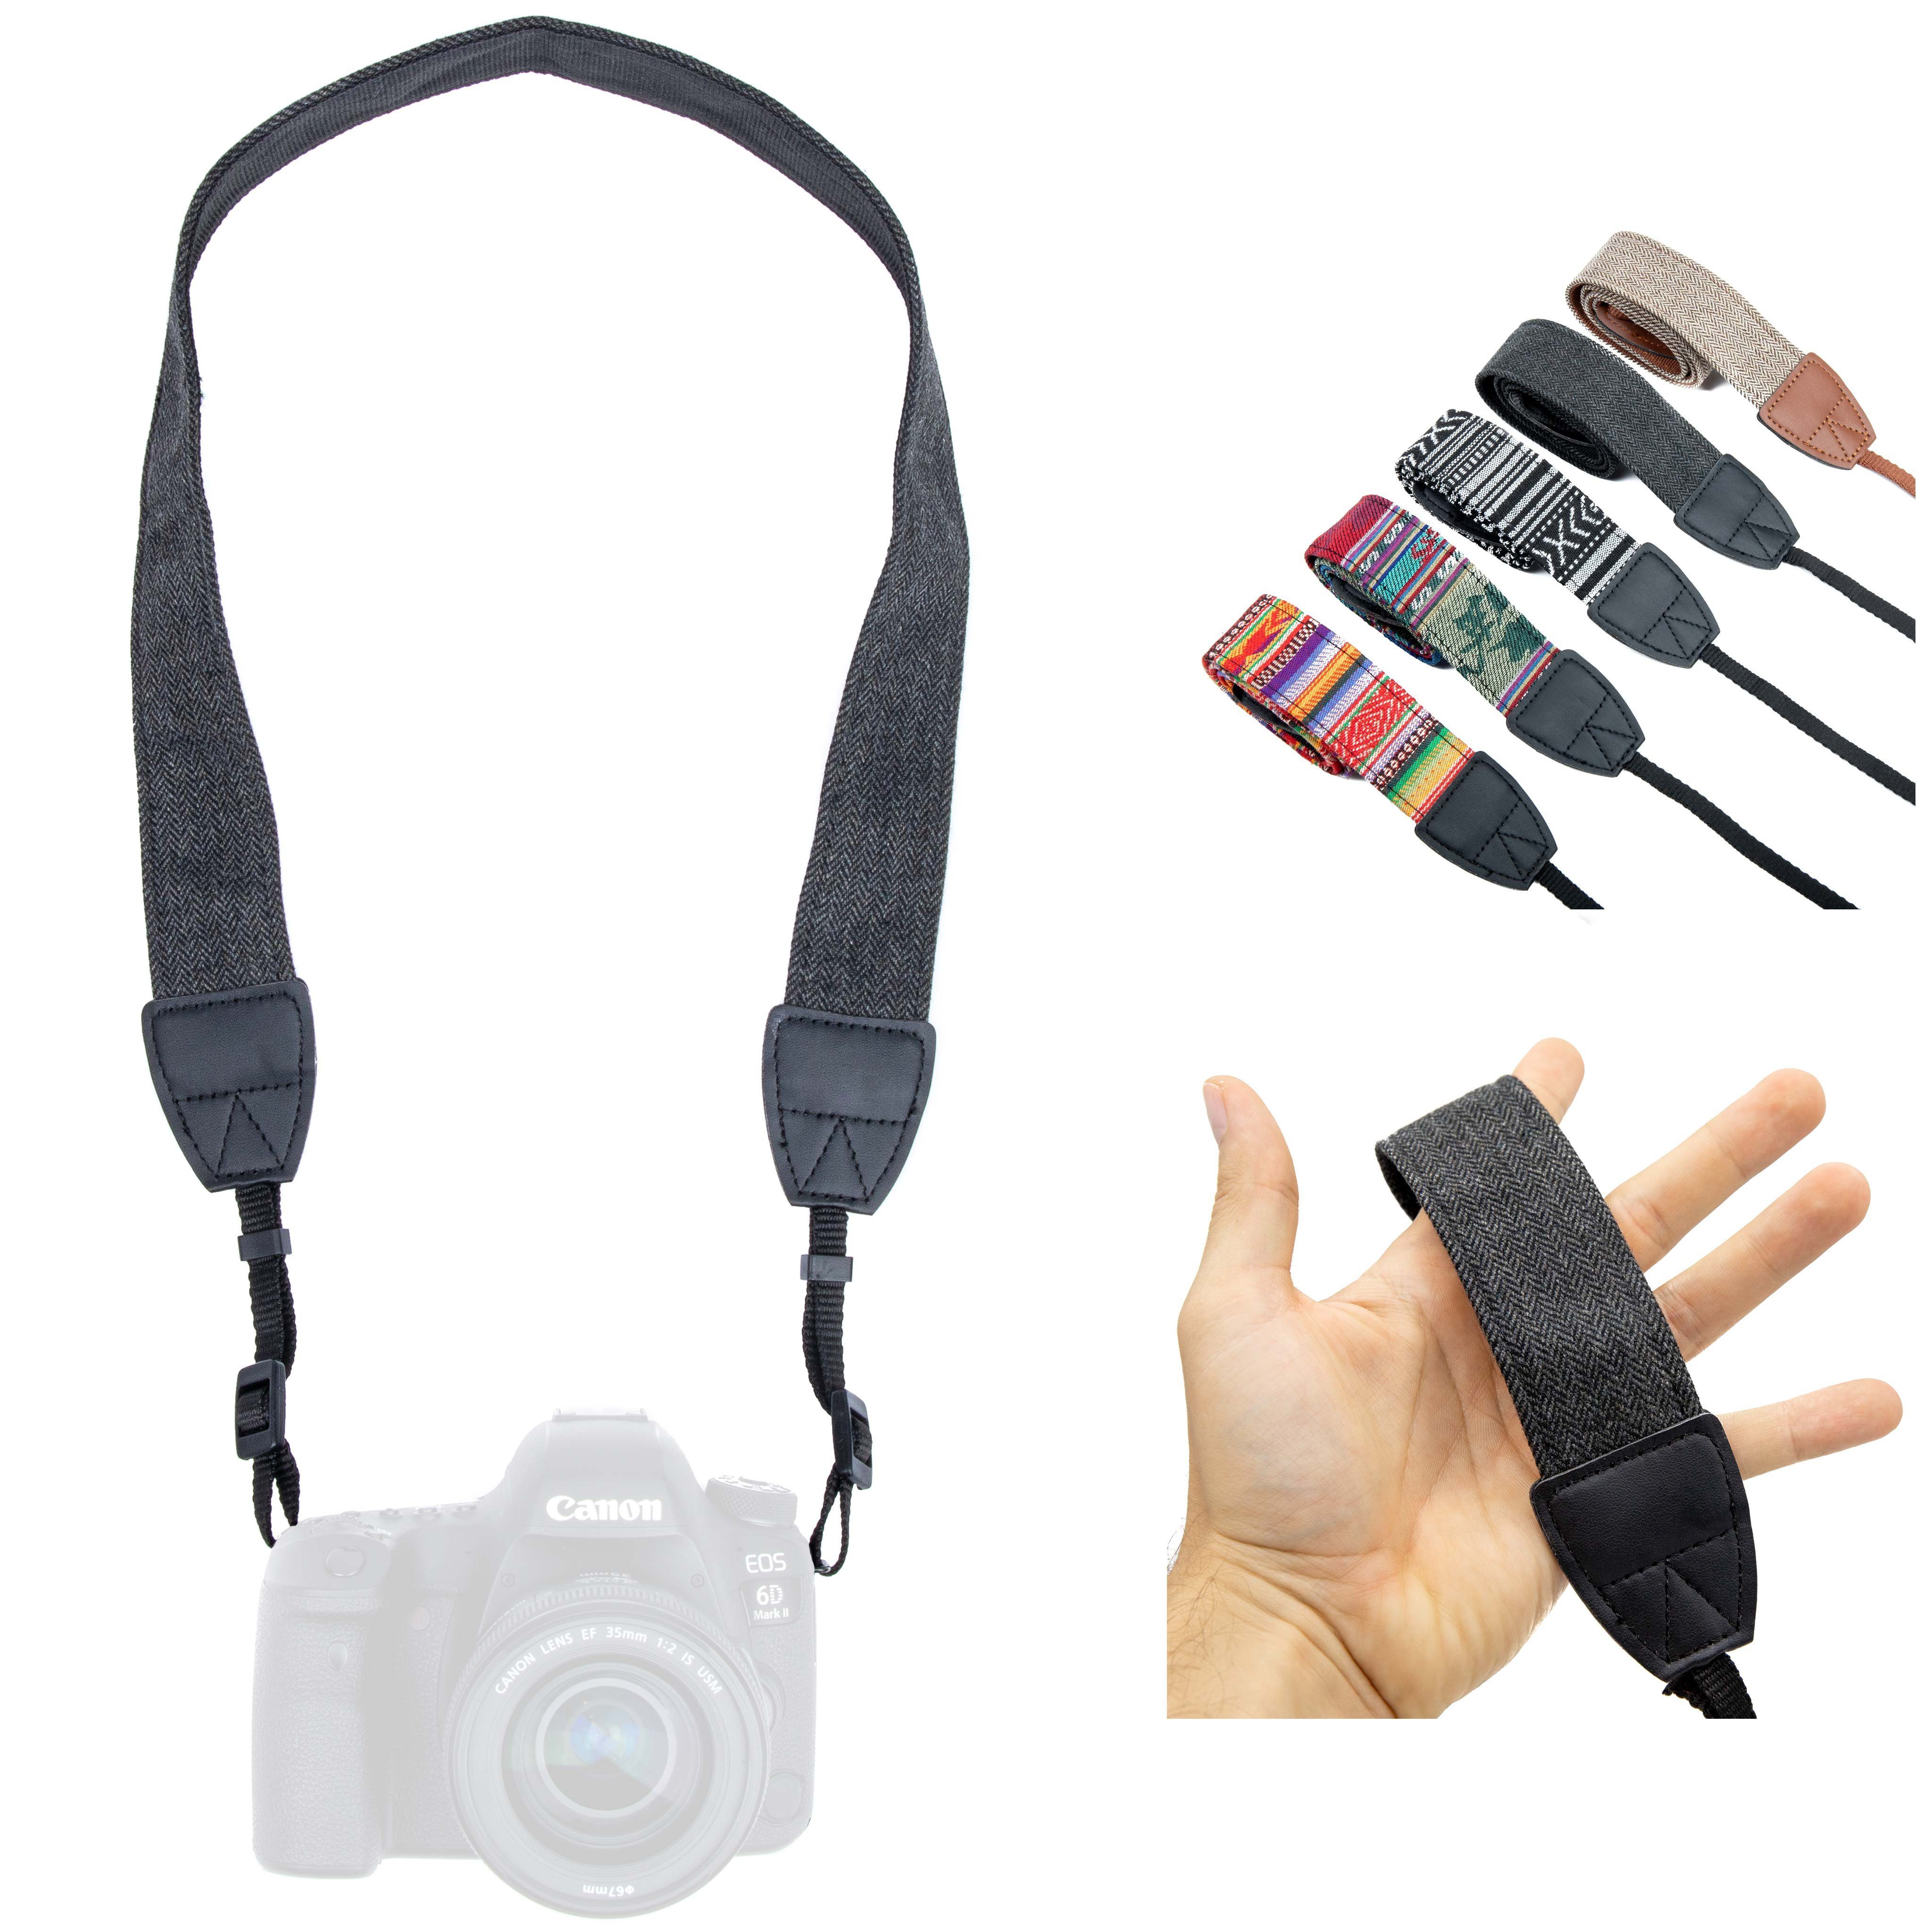 Lens-Aid Kamerazubehör-Set Kameragurt in schickem Design: Leinen Nacken- bzw. Schultergurt geeignet für Kameras von Canon, Nikon, Sony, Fujifilm, Olympus, Leica etc. Anthrazit